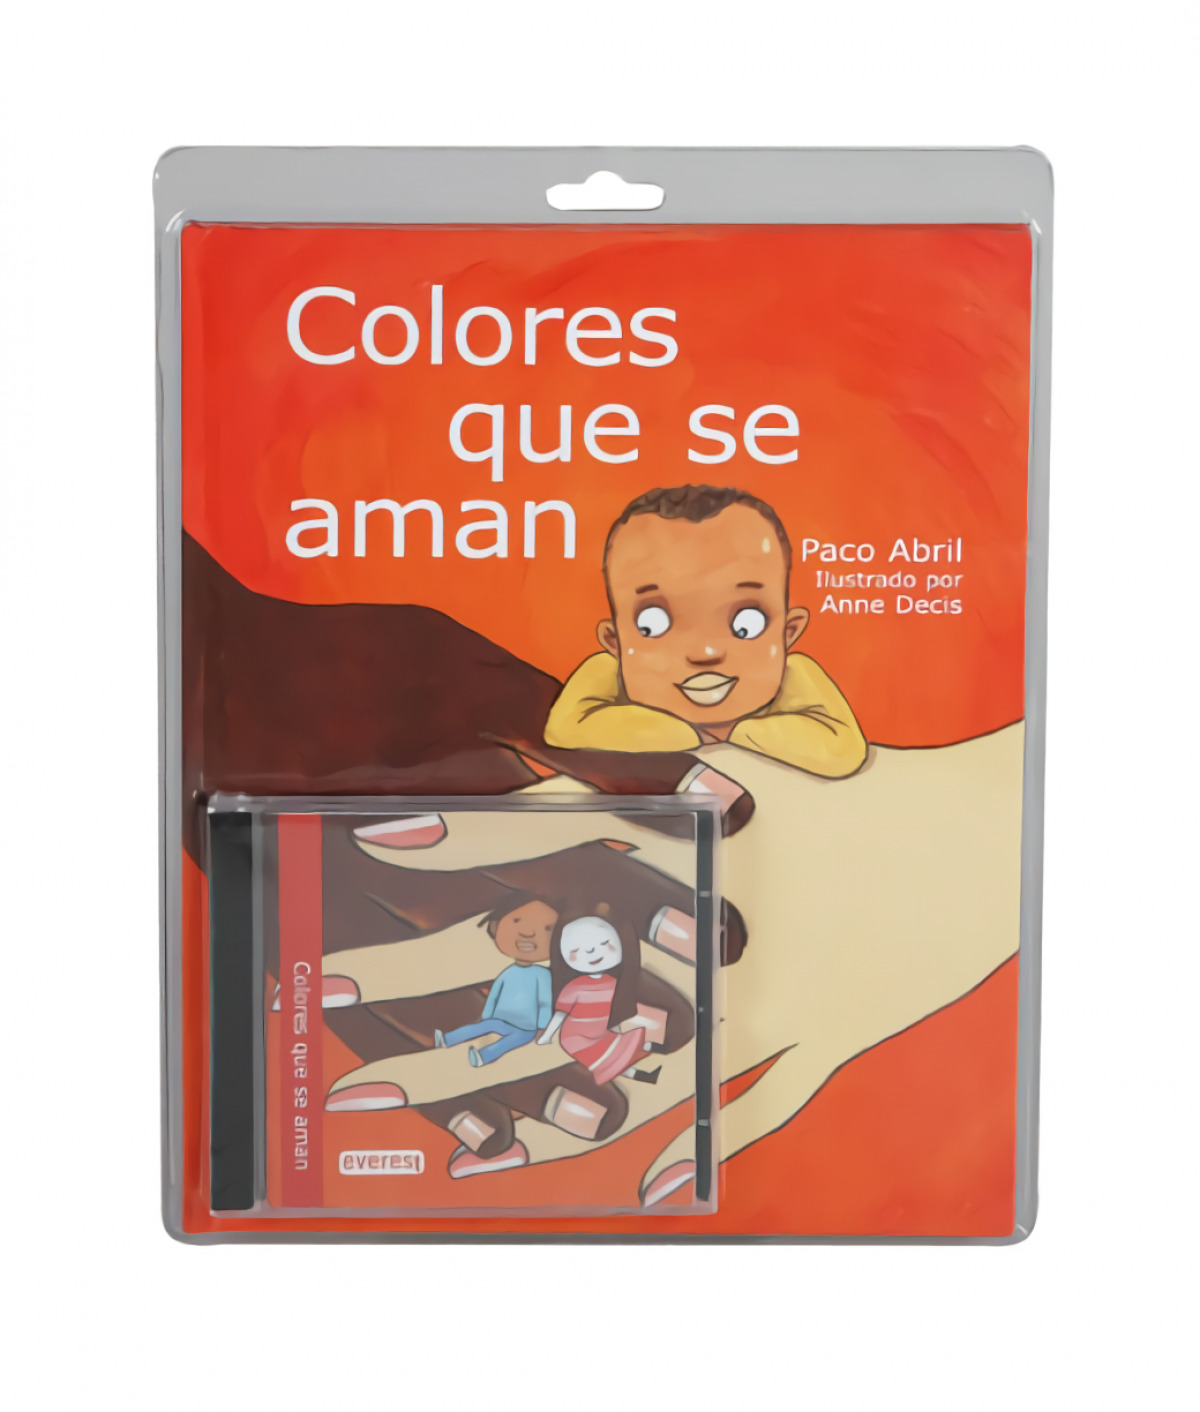 Colores que se aman - Francisco Abril Berán